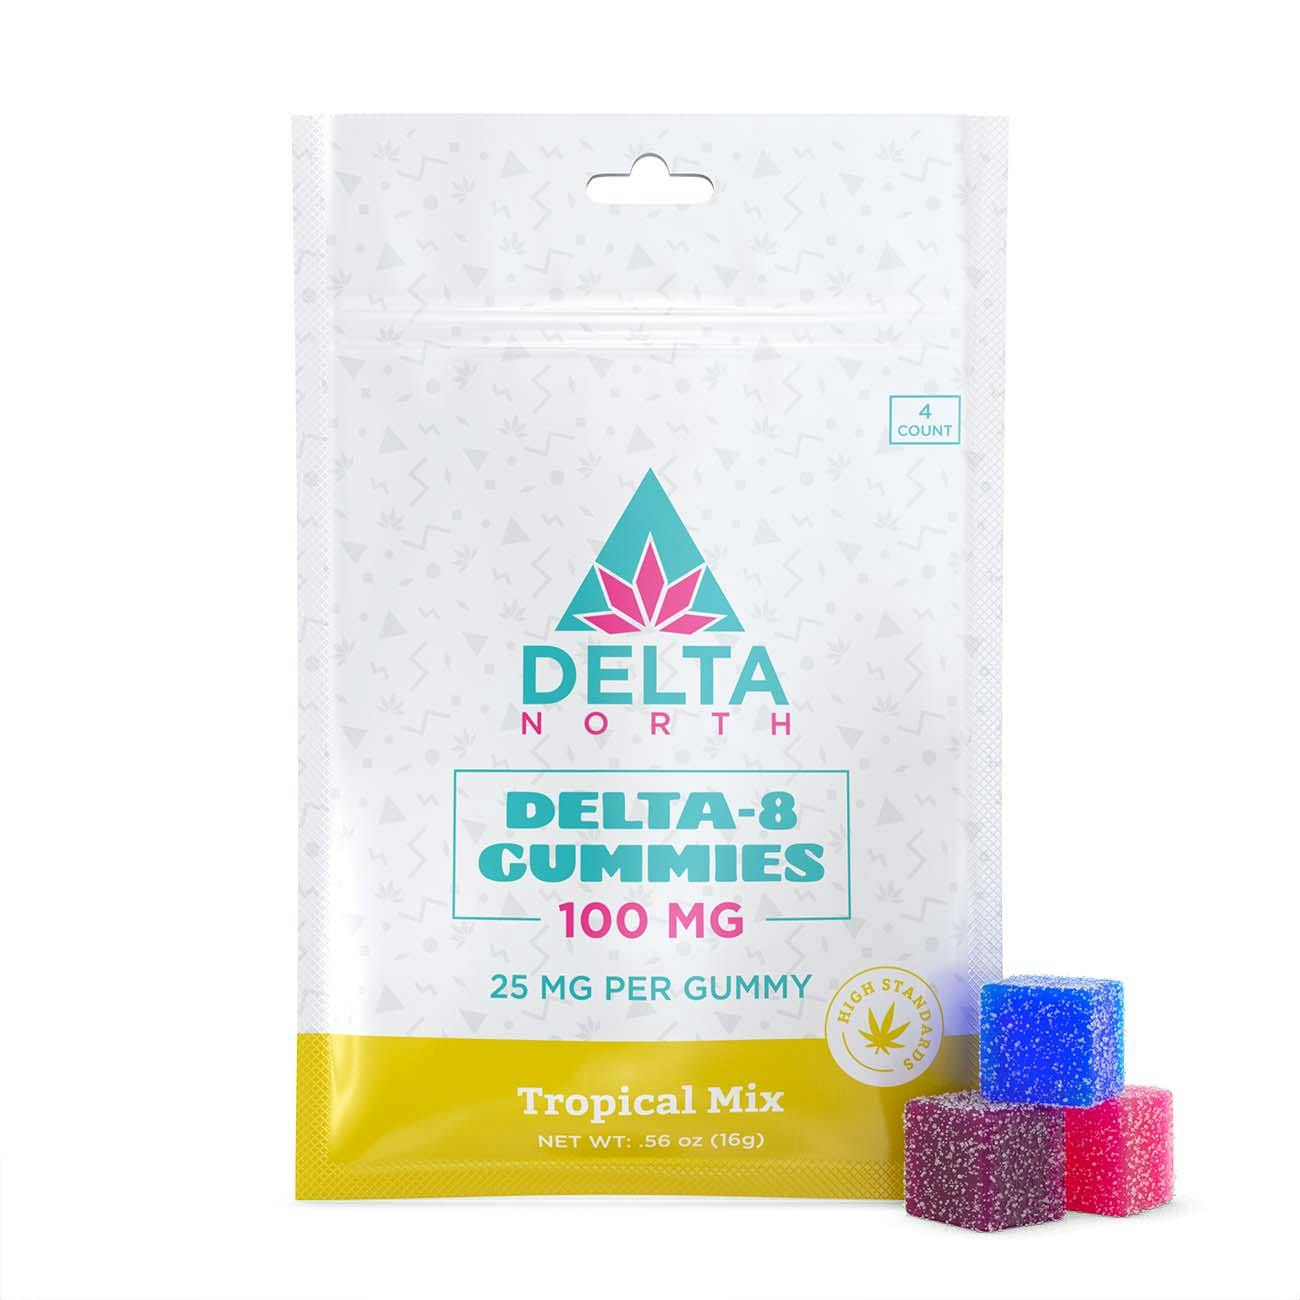 Delta-8 Gummies 100 mg Tropical Mix